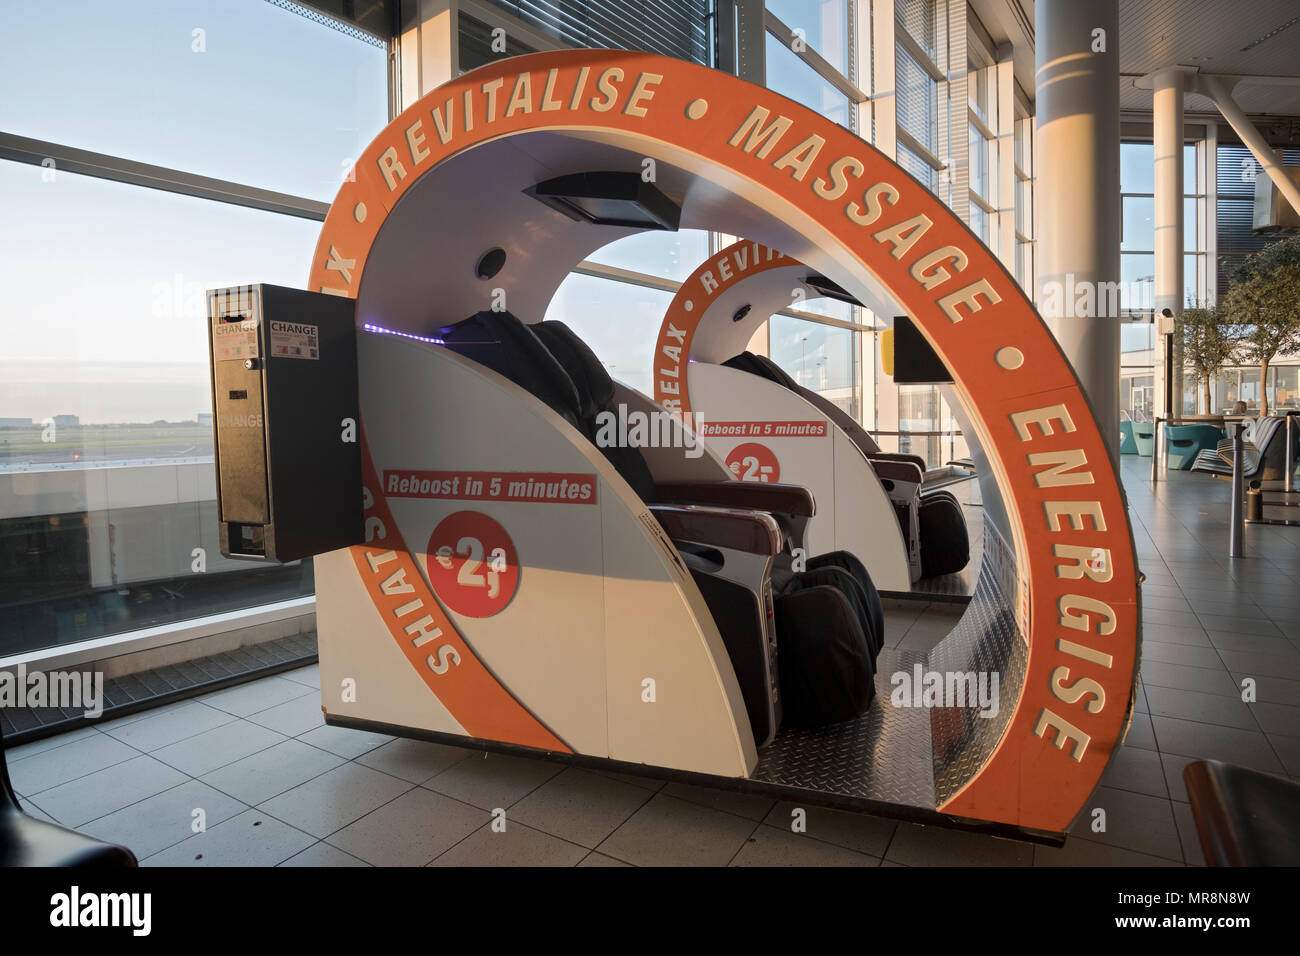 Eine Maschine am Flughafen Schiphol außerhalb von Amsterdam, Niederlande, bietet eine 5-minütige belebende Massage für zwei Euro. Stockfoto